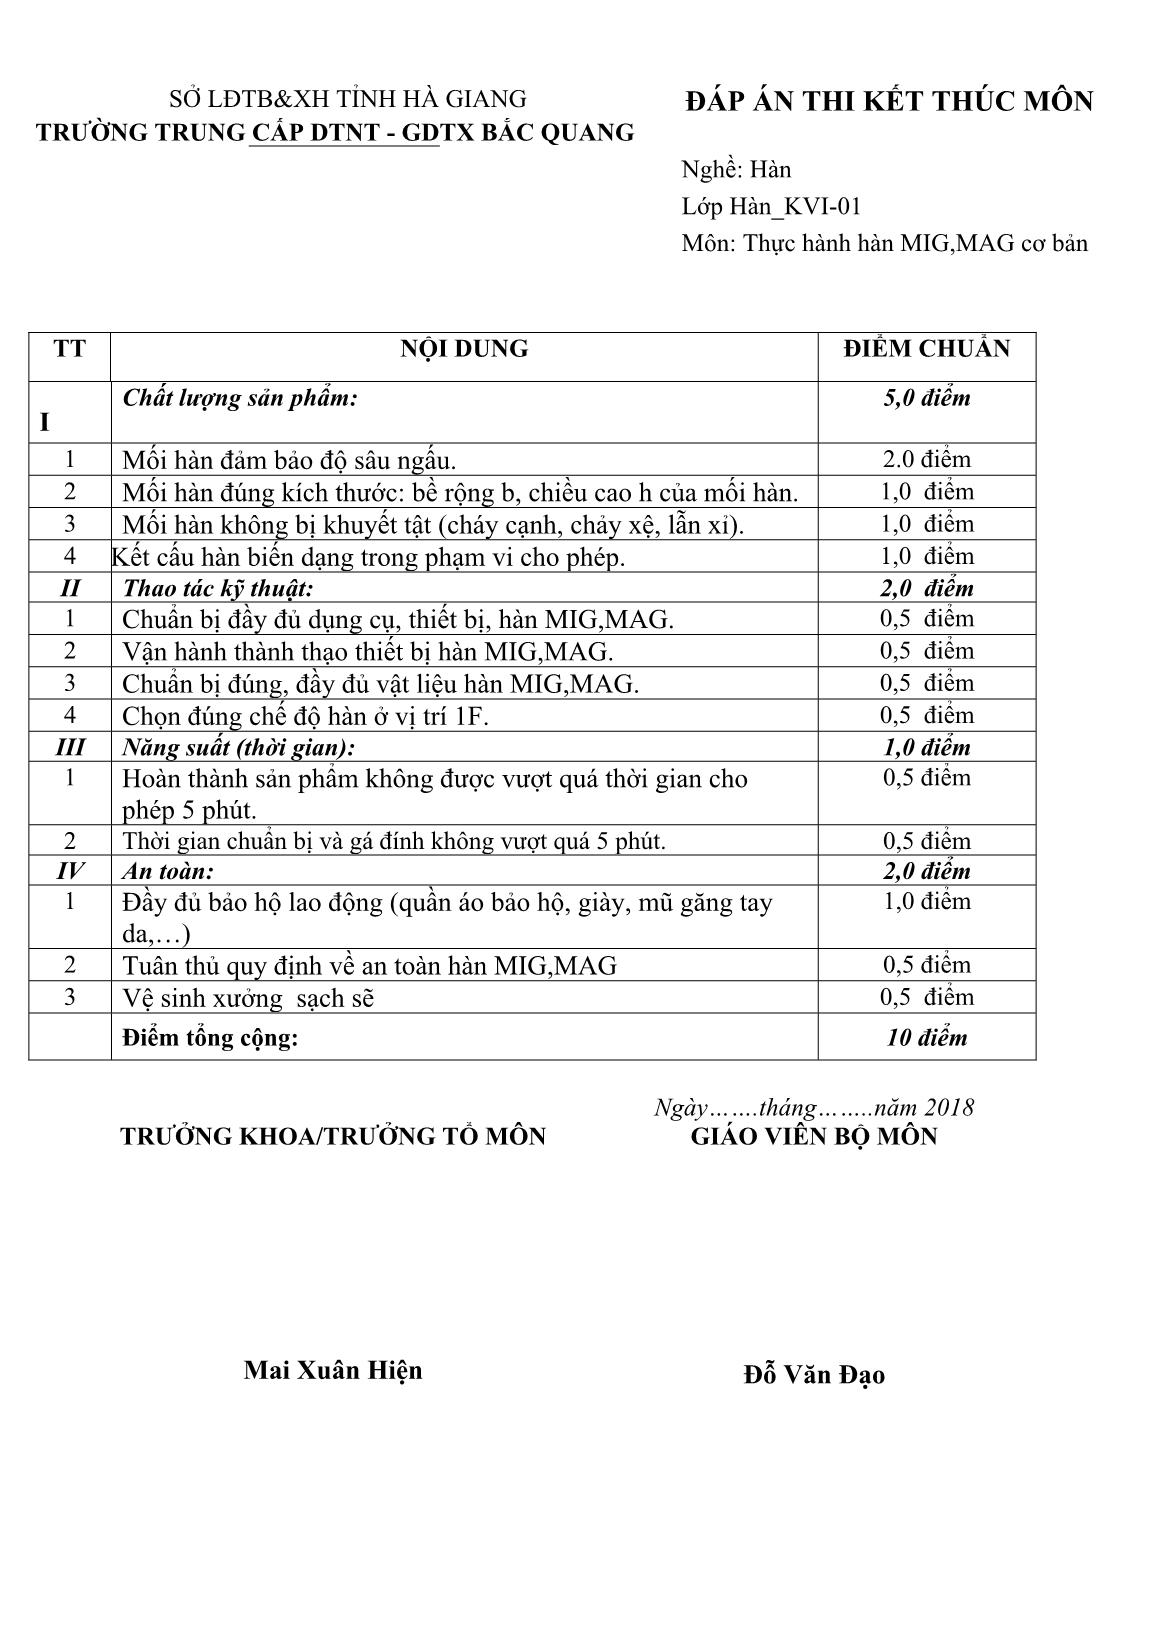 Đề thi kết thúc môn Thực hành hàn MIG, MAG Cơ bản (Đề số 1) - Trường Trung cấp DTNT - GDTX Bắc Quang (Có đáp án) trang 2